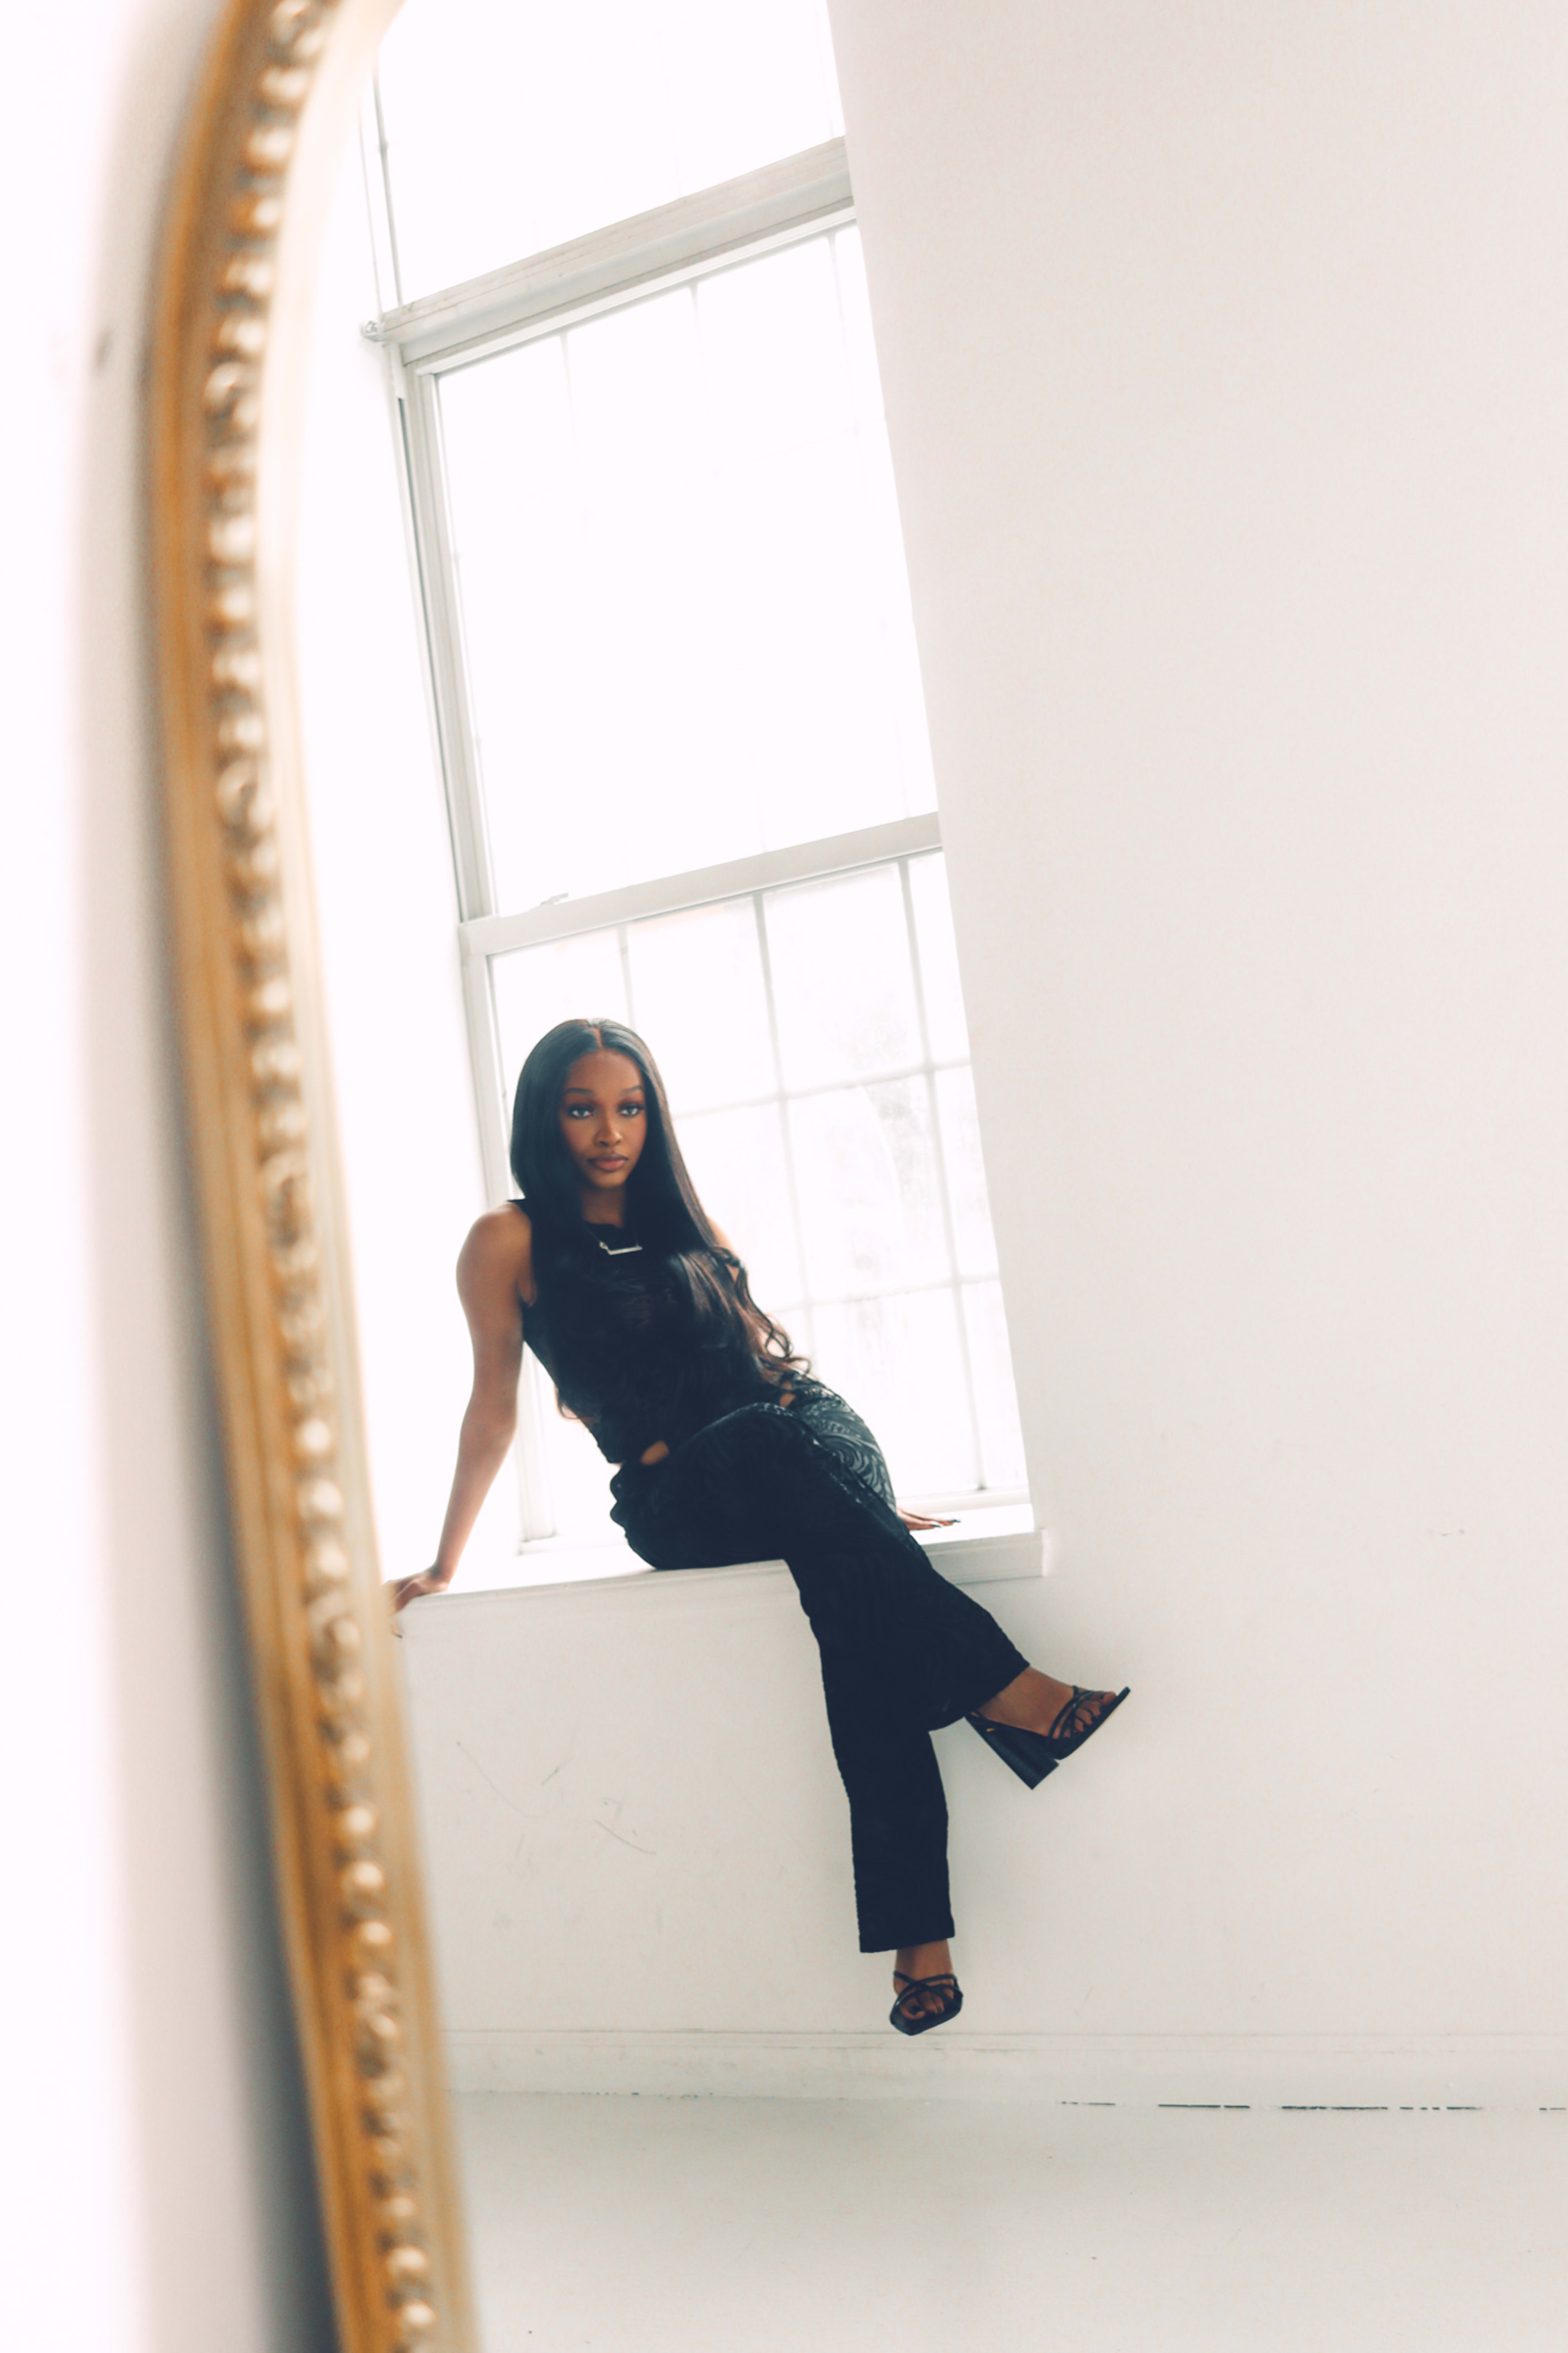 Una sesión de fotos minimalista de una mujer sentada en una repisa negra frente a un espejo blanco.